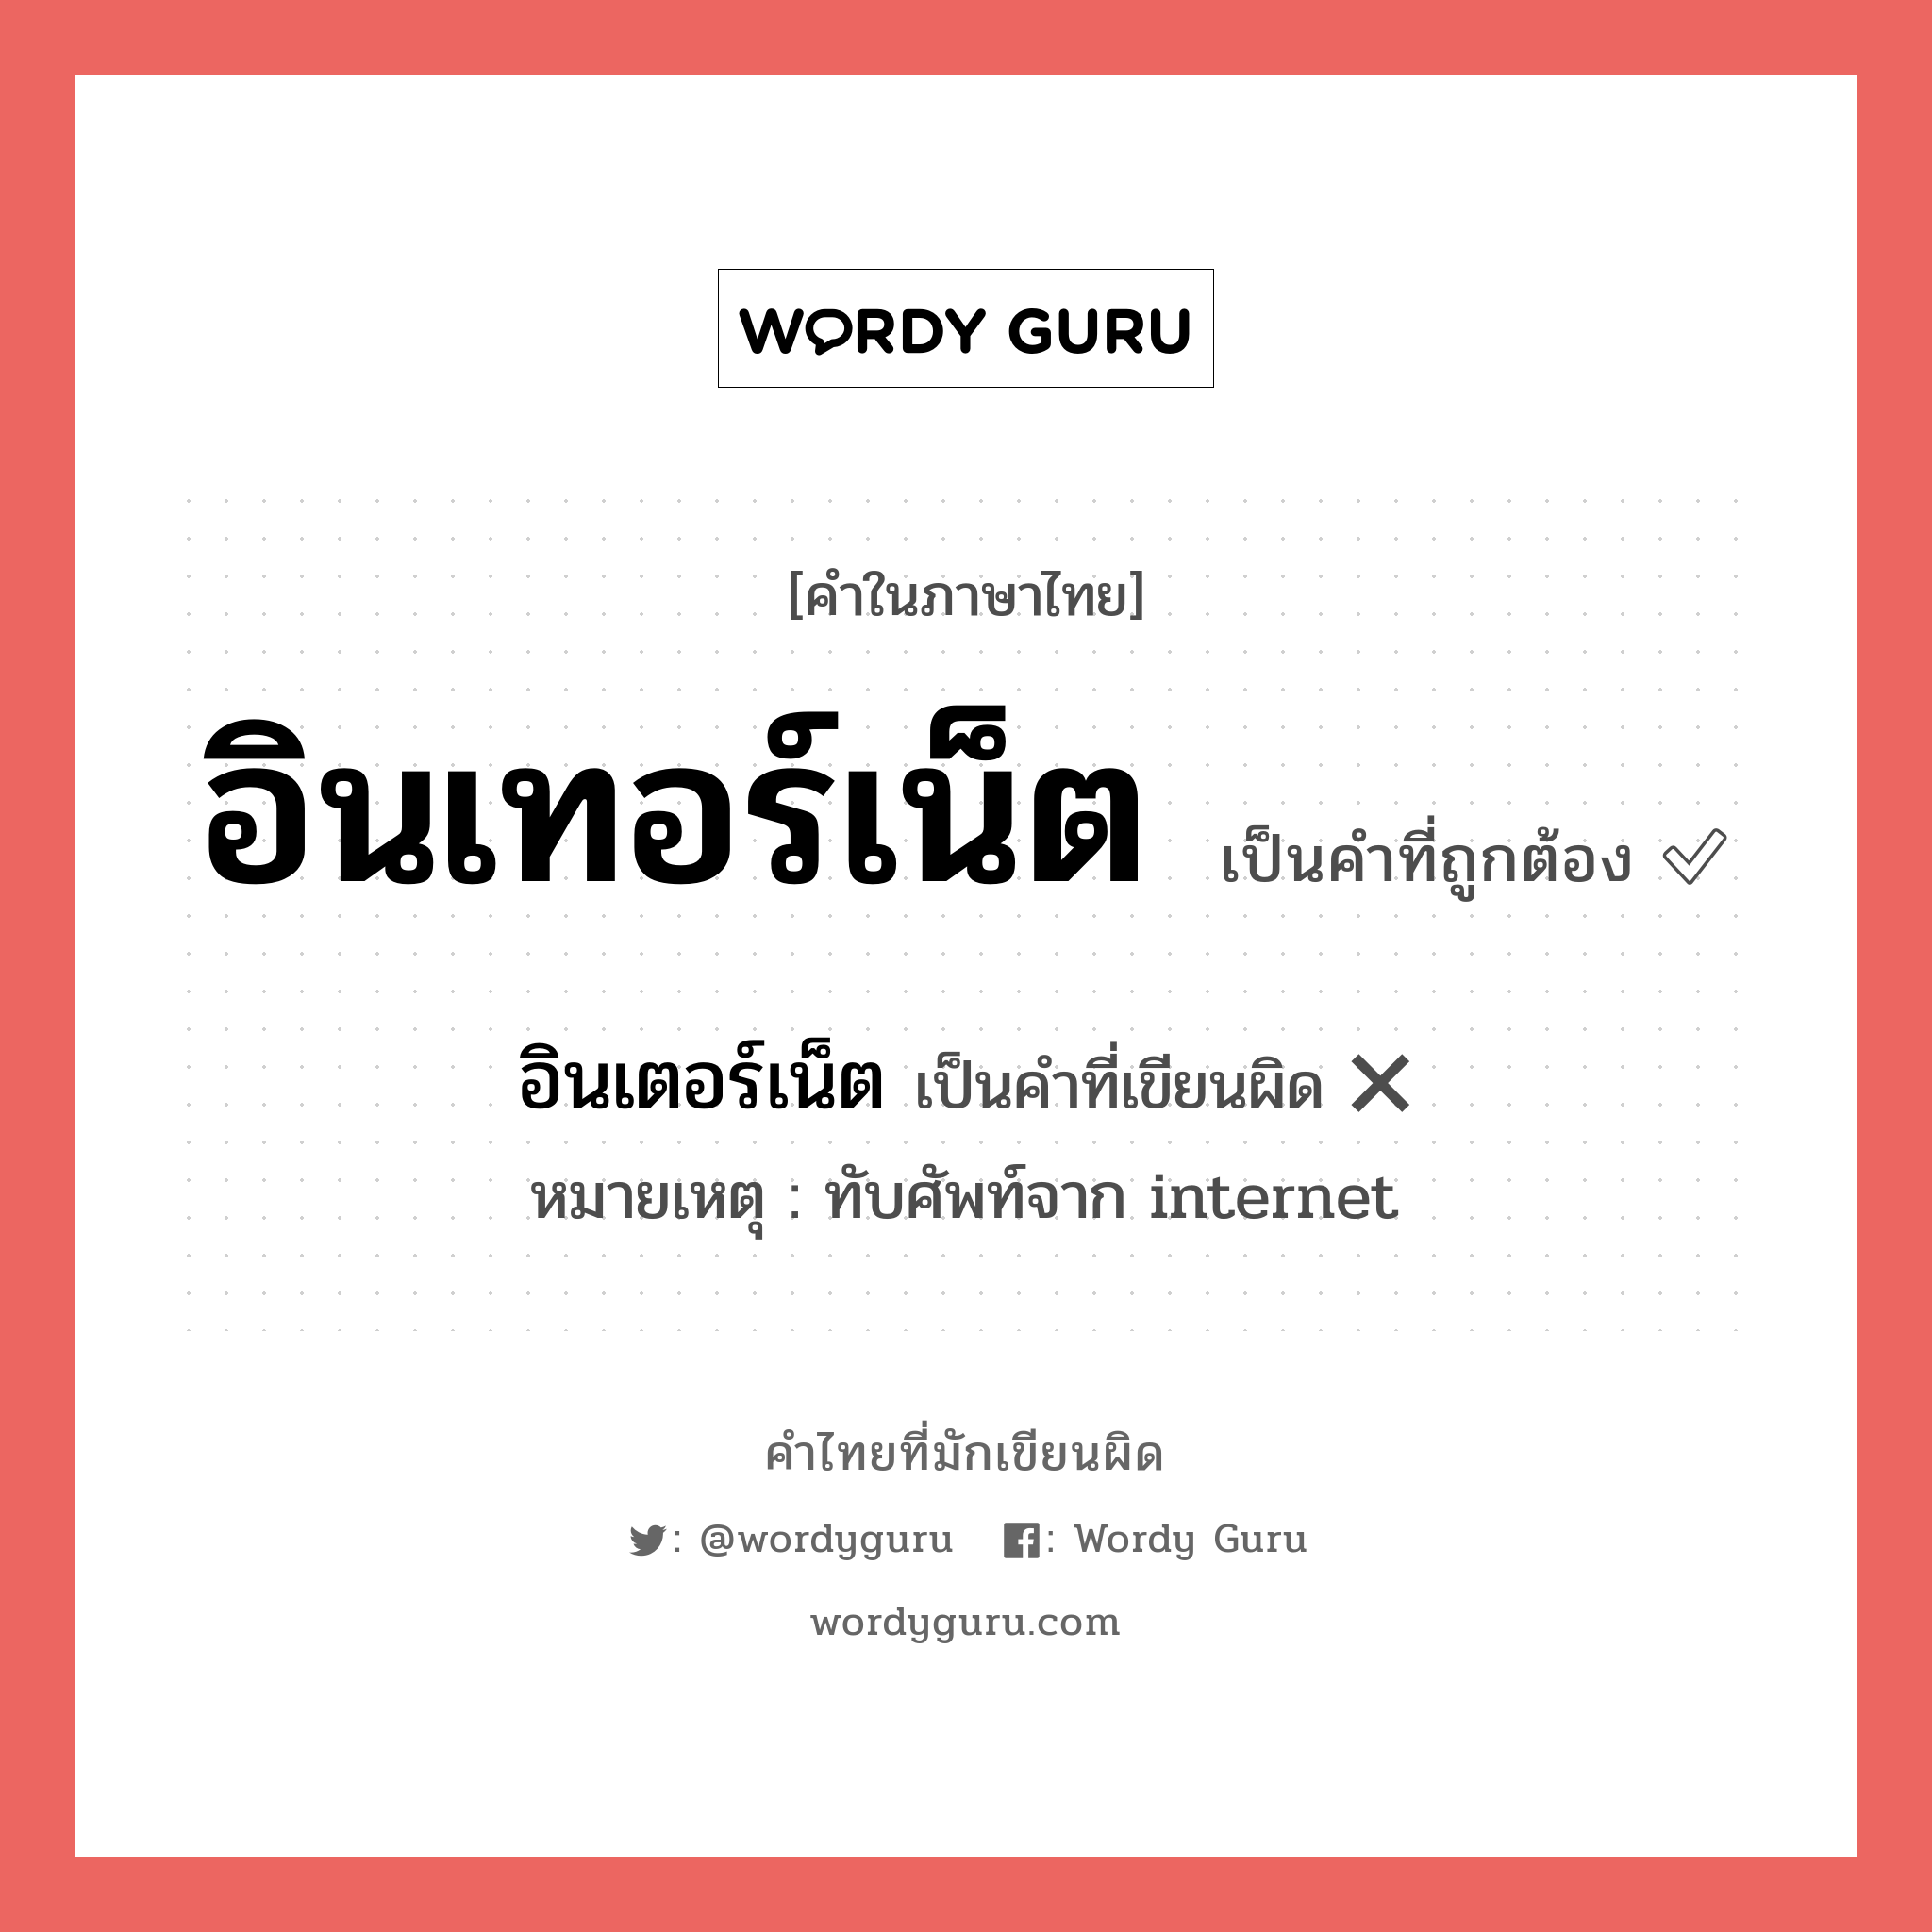 "อินเทอร์เน็ต" กับ "อินเตอร์เน็ต" เขียนอย่างไร คำไหนที่ถูกต้อง - คำไทยที่มักเขียนผิด